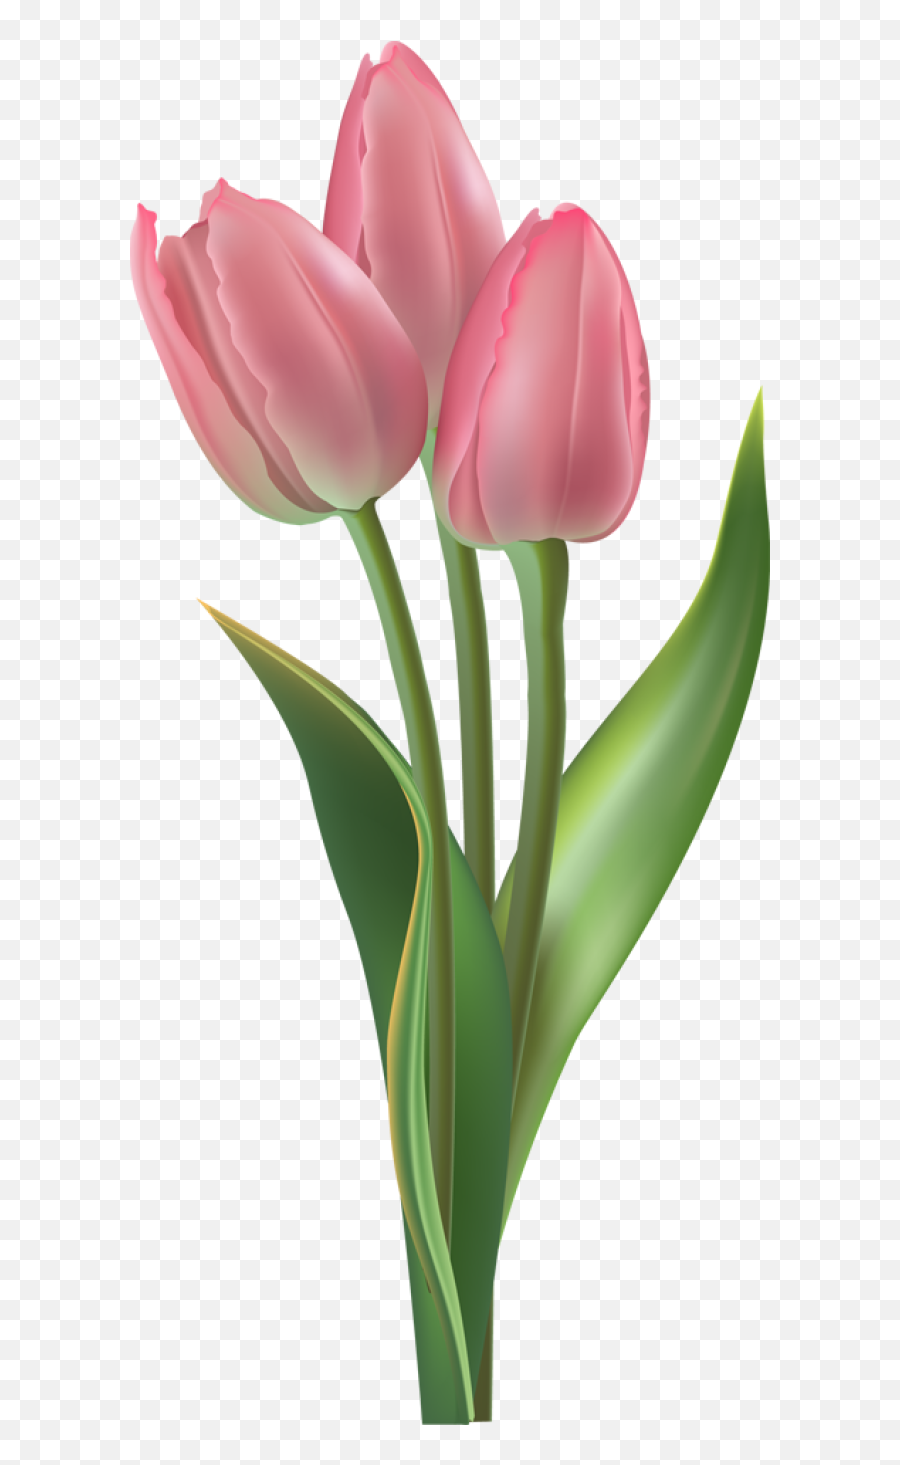 Download Free Png Tulip Transparent Background - Dlpngcom Tulip Png,Spring Background Png